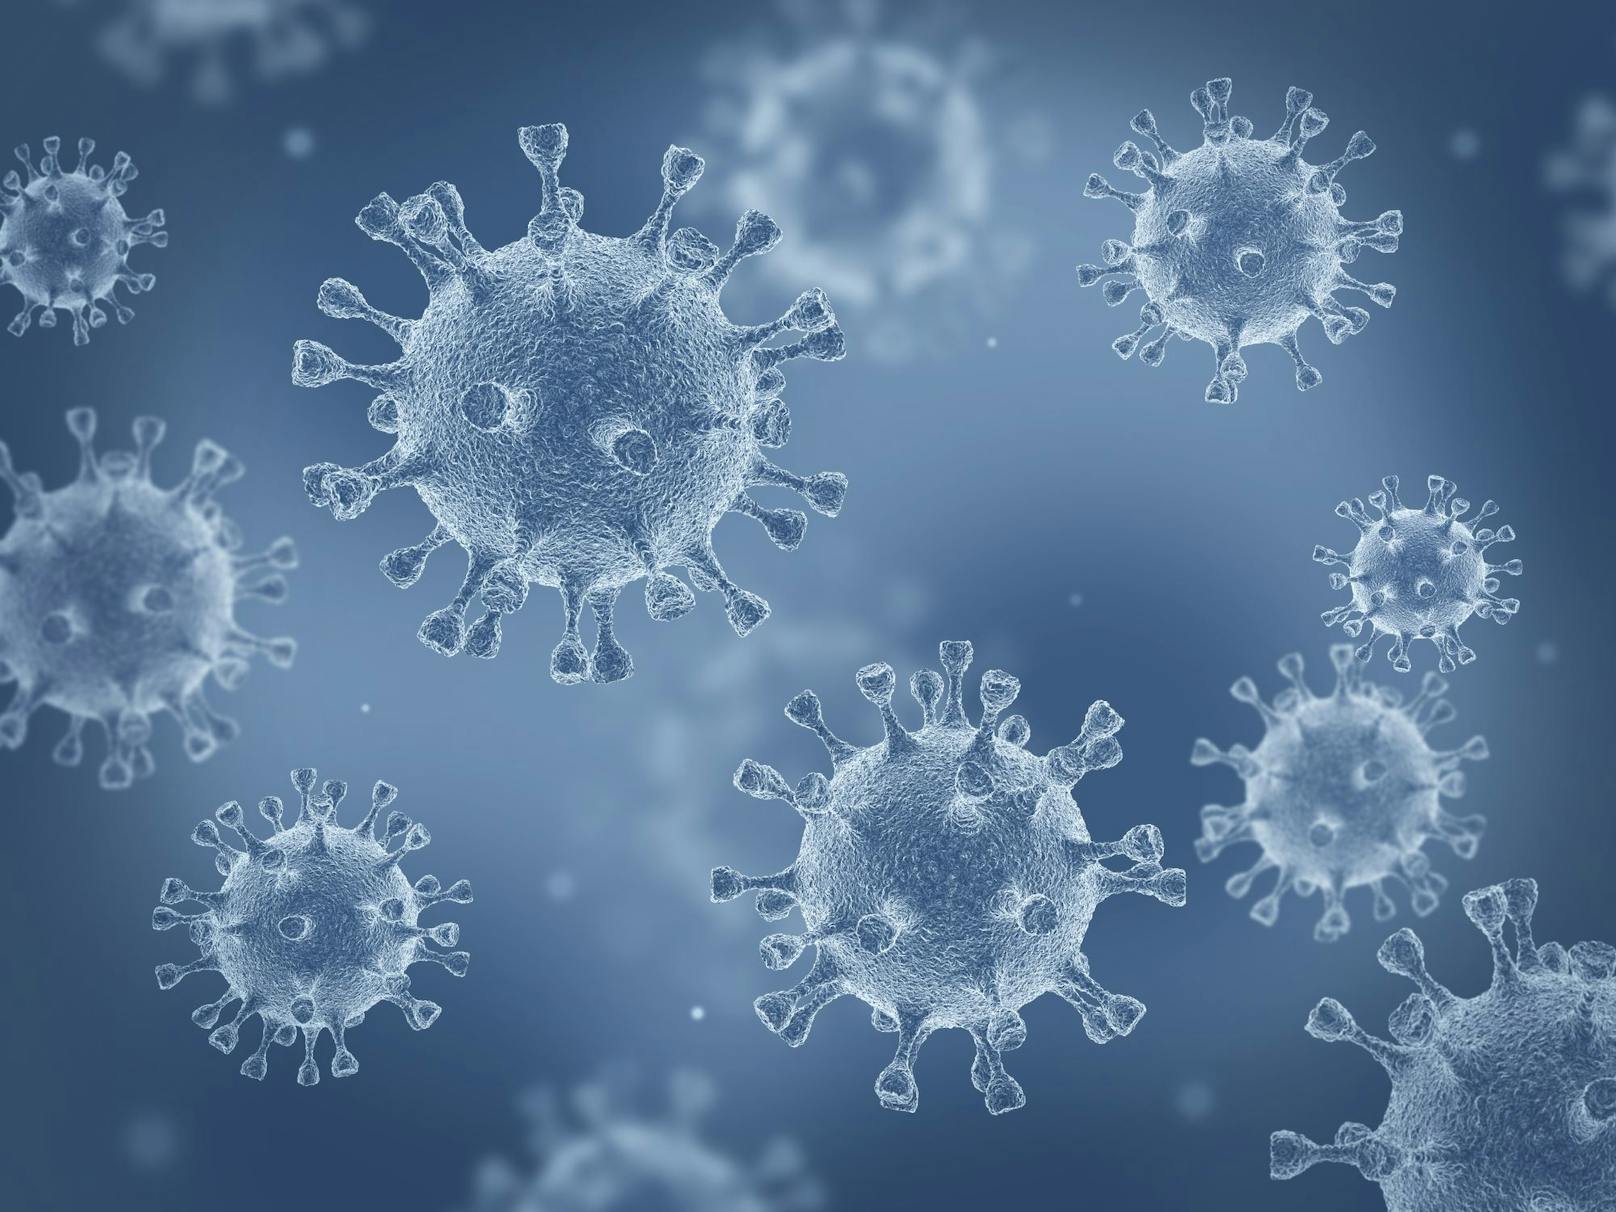 Eine weitere nicht bekannte Virusmutation wurde in Japan nachgewiesen. Laut der japanischen Gesundheitsbehörde ist sie aber nicht mit den Erregern aus Großbritannien und Südafrika identisch.